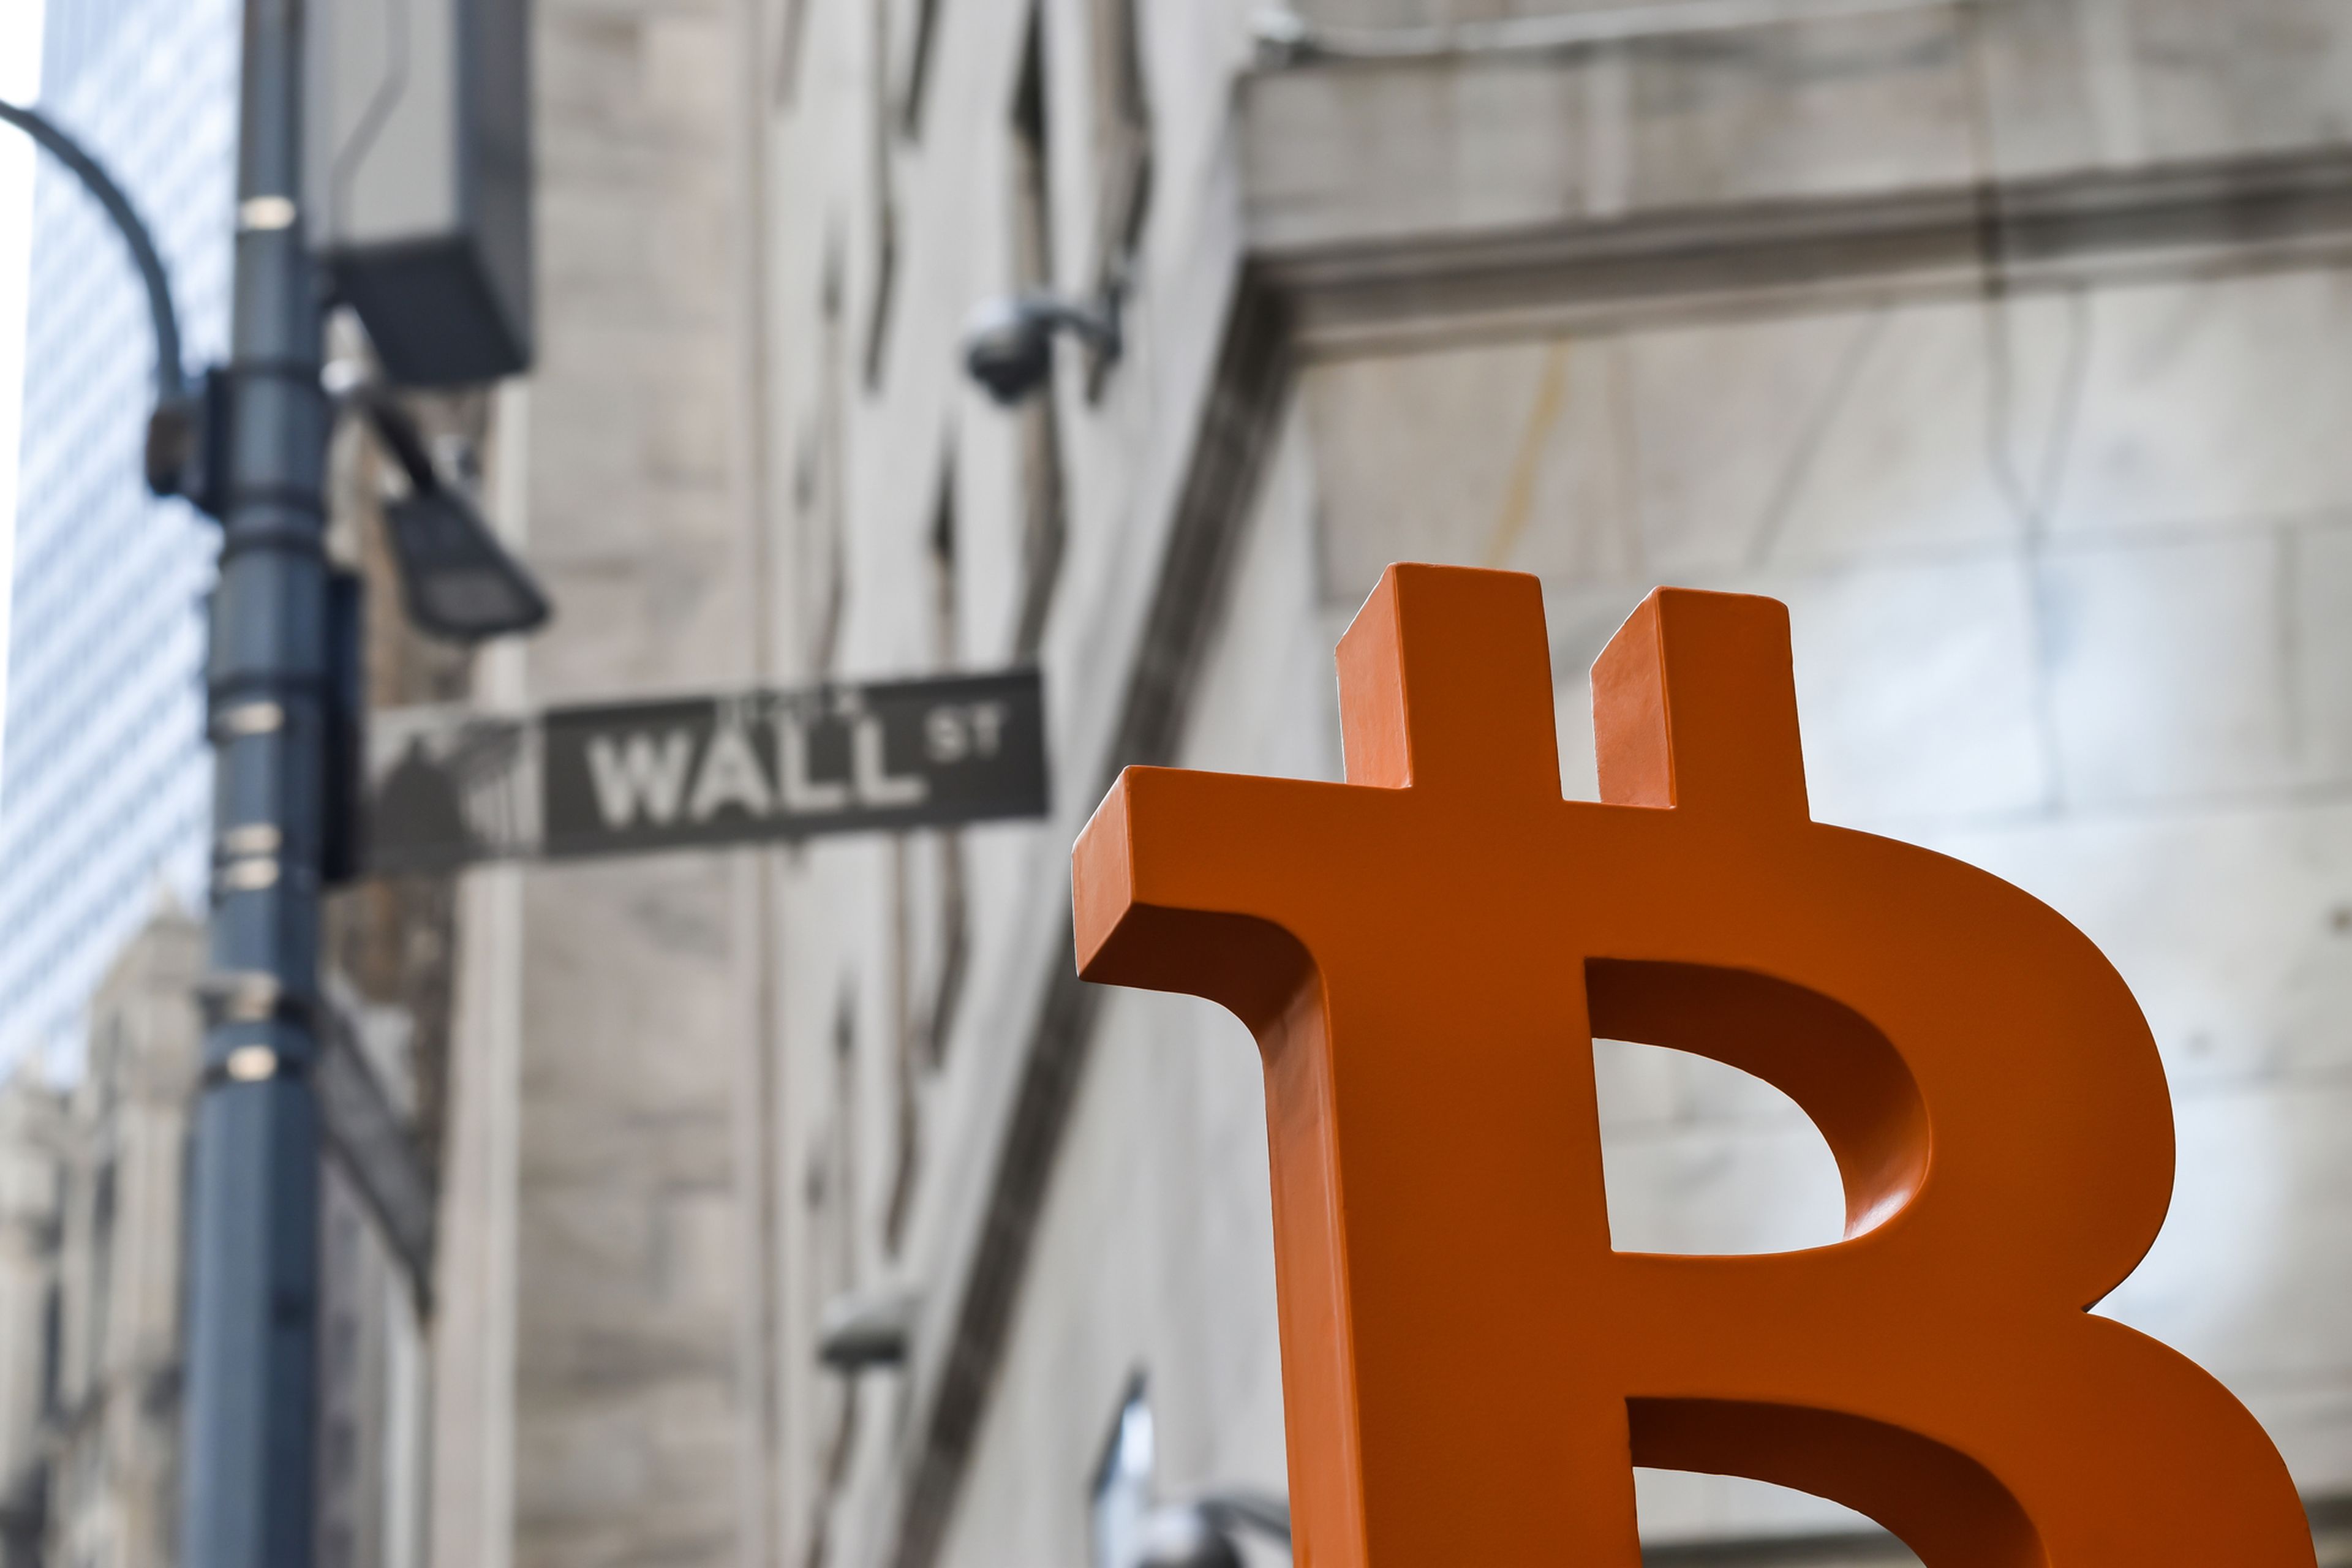 Símbolo de bitcoin delante de una señal de Wall Street St.